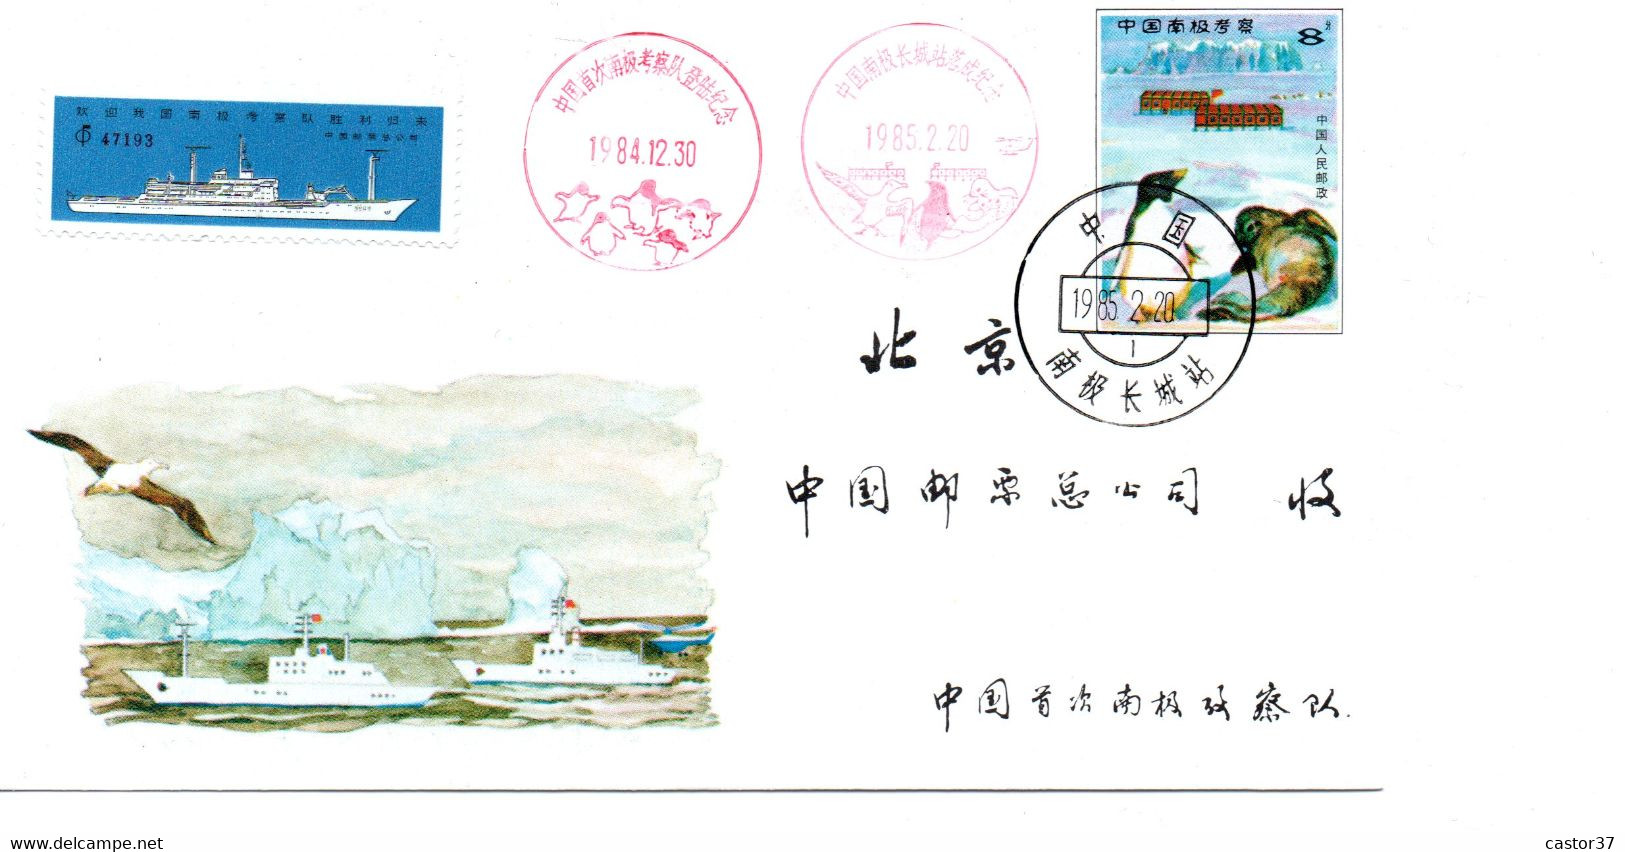 Chine RPC Livret Expédition En Antarctique JF.4 (1-1) - Andere Verkehrsträger